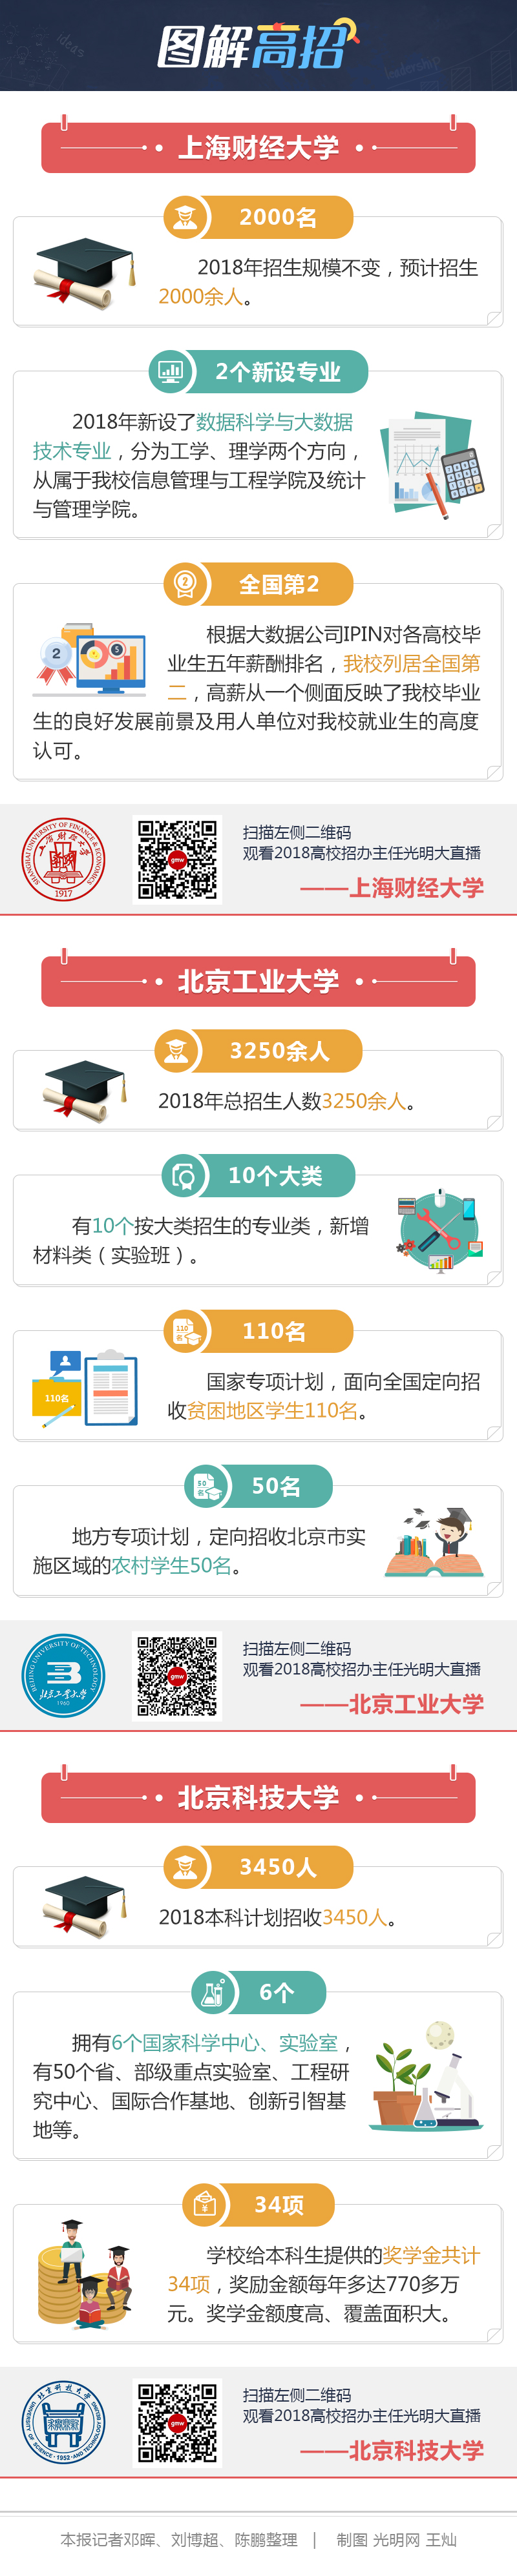 图解高招-上海财经大学、北京科技大学、北京工业大学